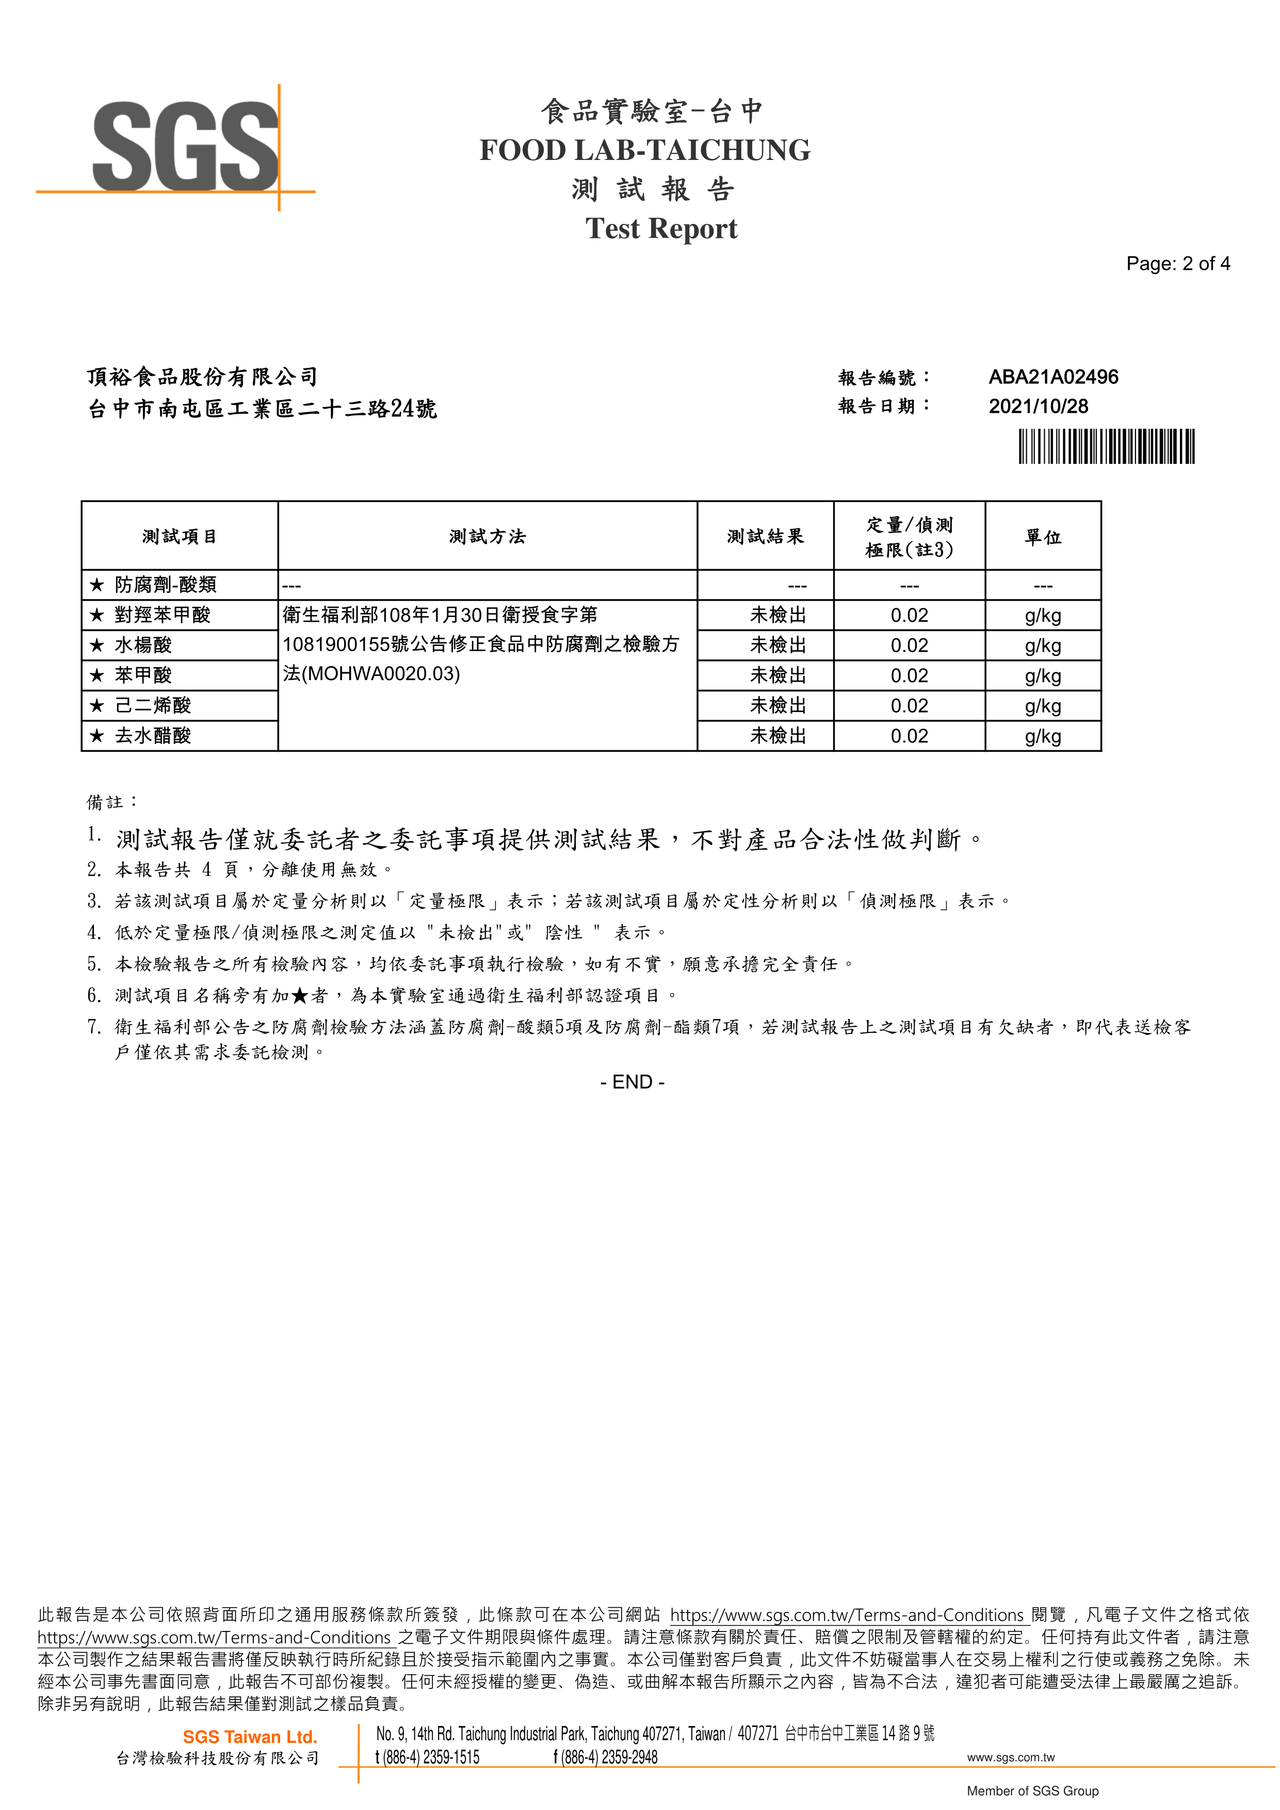 麻辣臭豆腐鍋-防腐劑檢驗報告2021.10.28